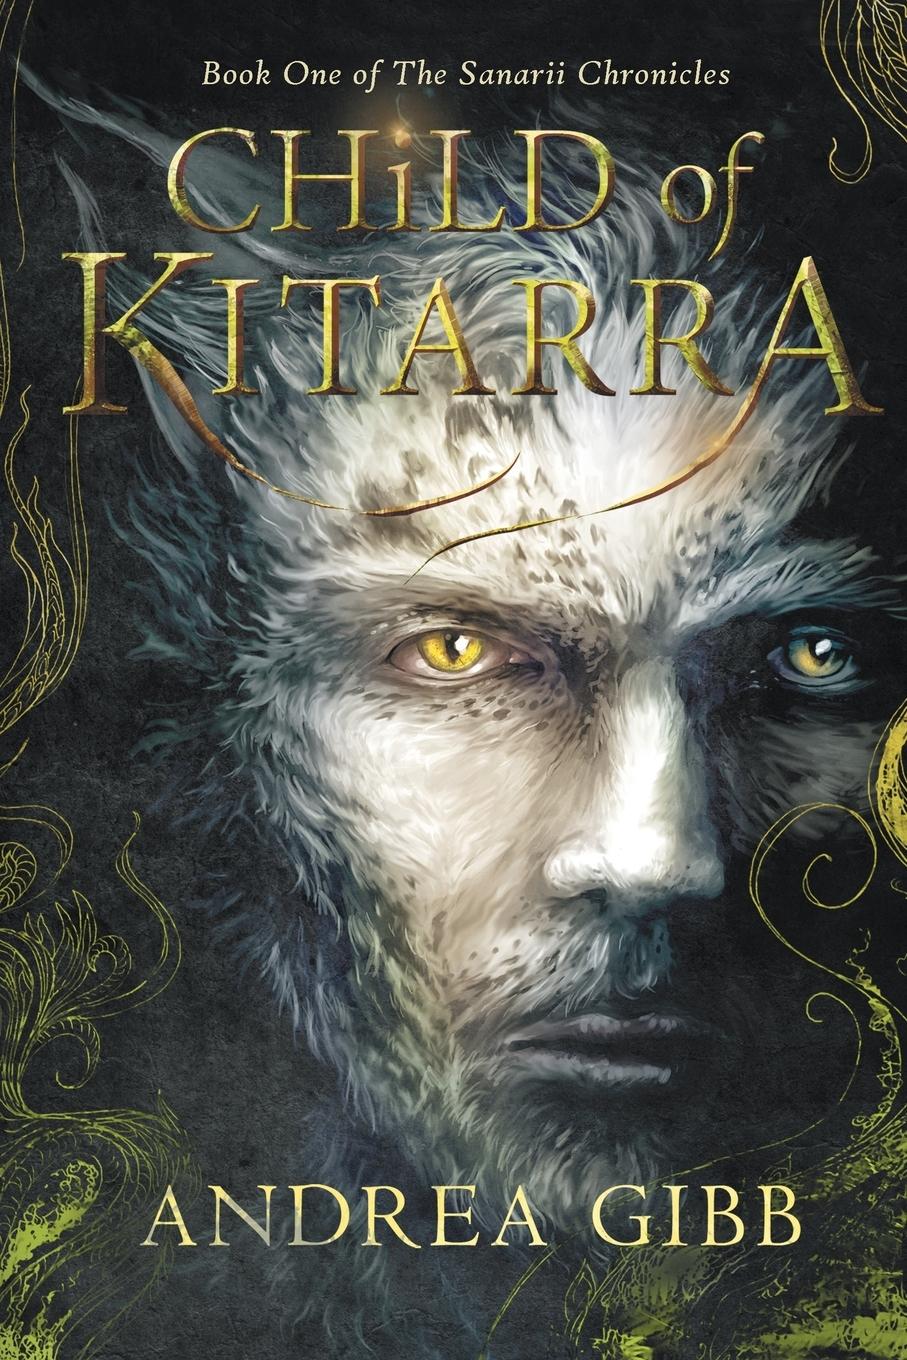 Child of Kitarra